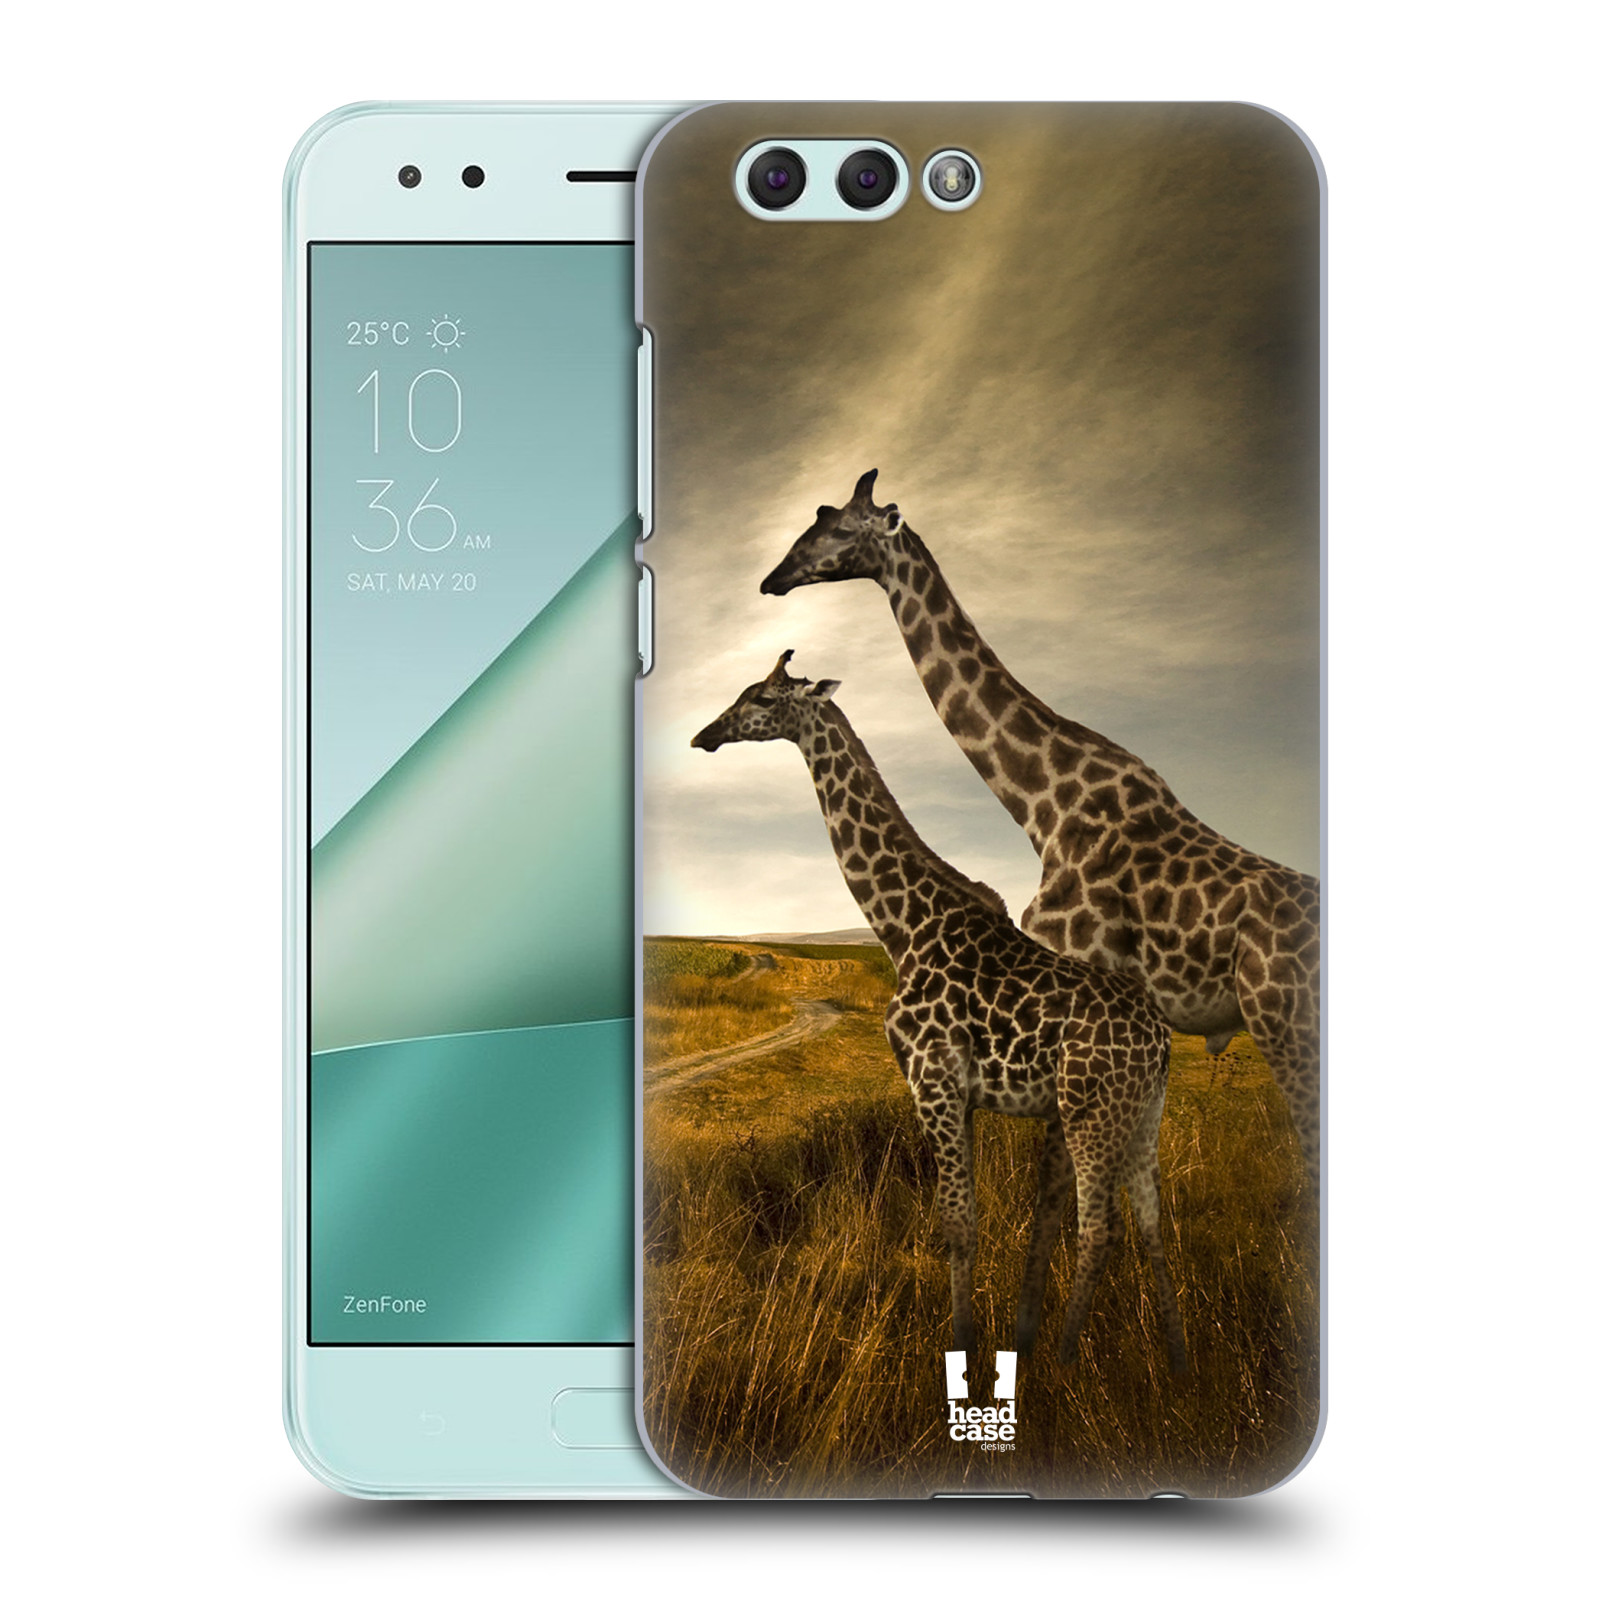 HEAD CASE plastový obal na mobil Asus Zenfone 4 ZE554KL vzor Divočina, Divoký život a zvířata foto AFRIKA ŽIRAFY VÝHLED